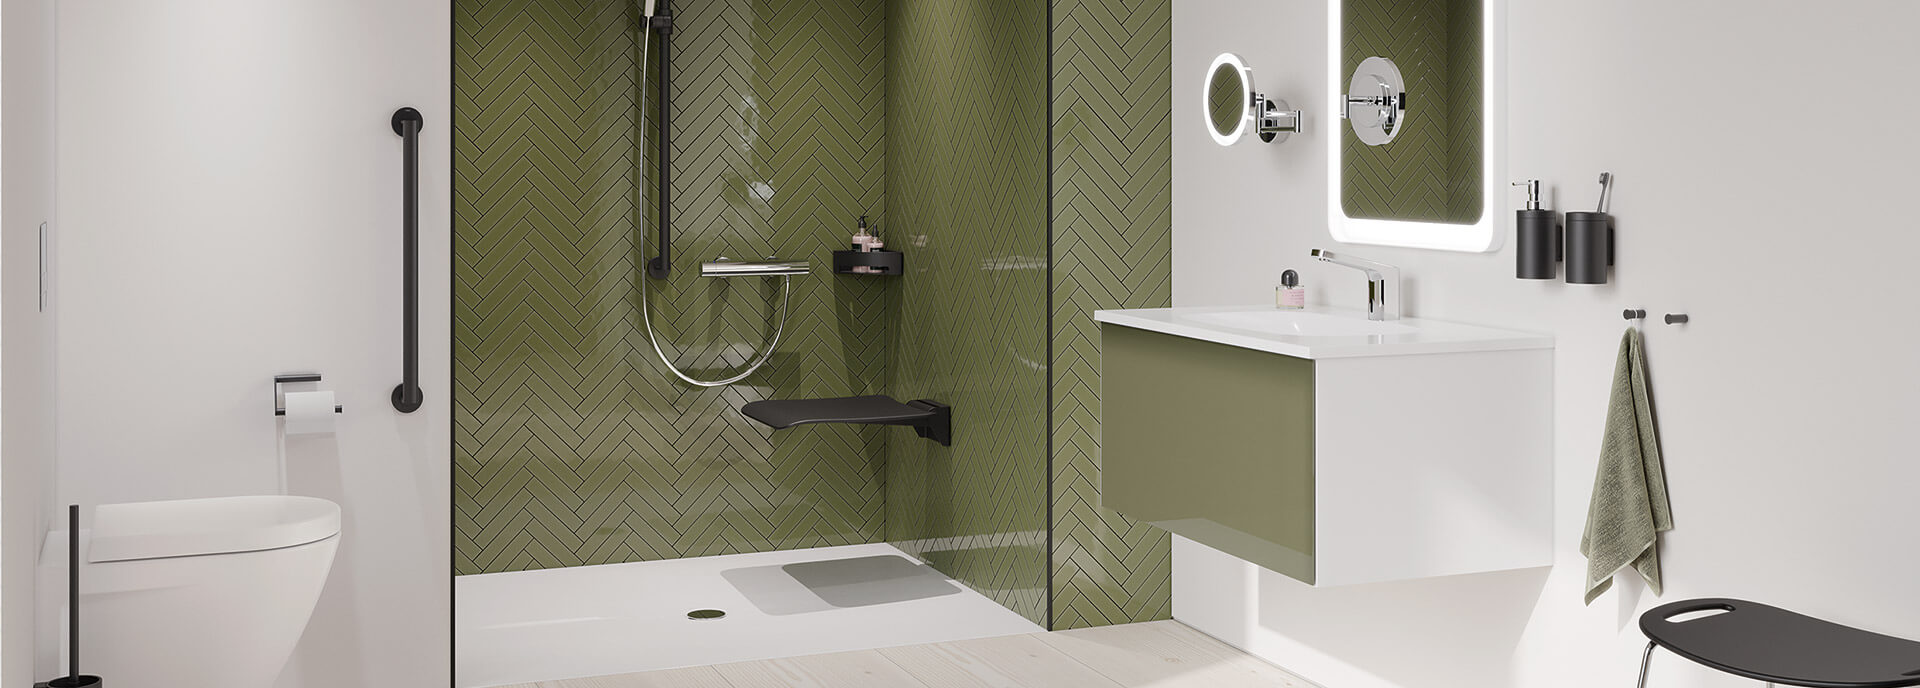 Badezimmer in Weiß und Olivgrün mit Sitzmöglichkeit in der Dusche